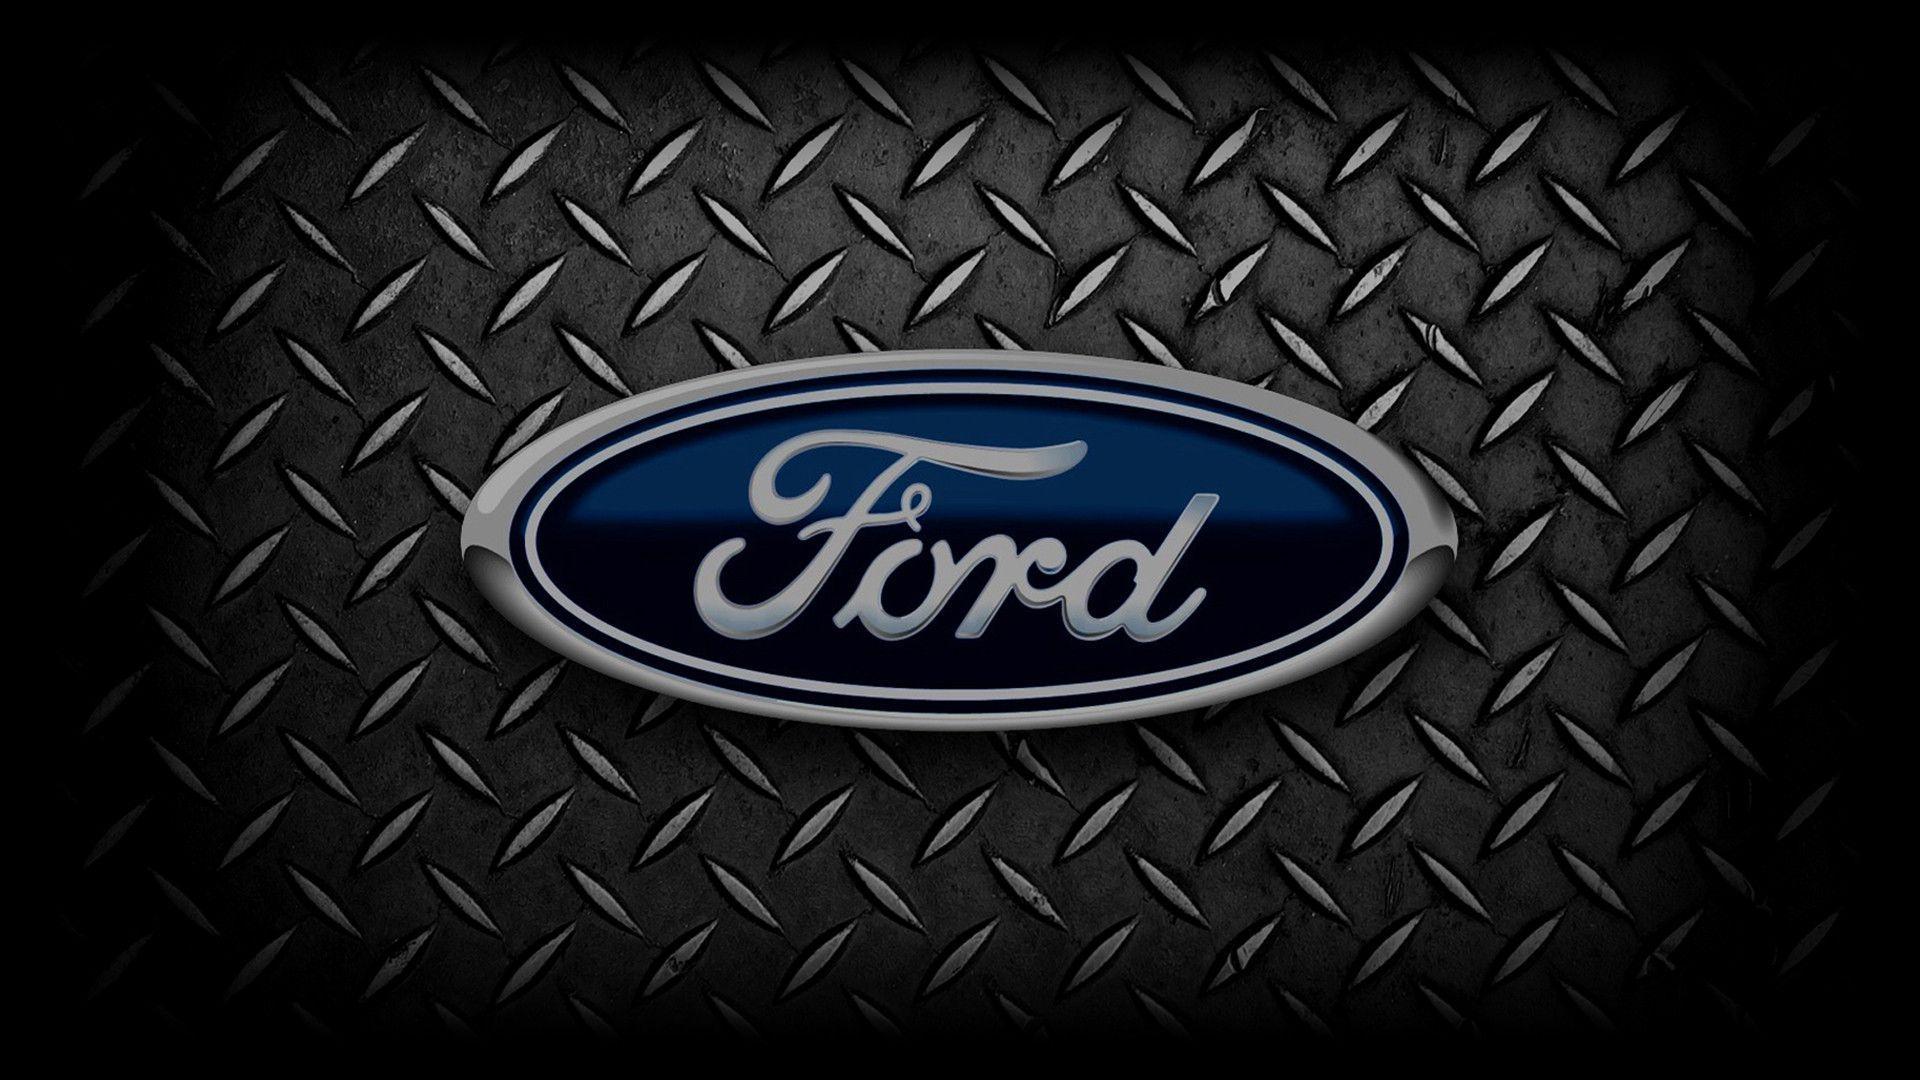 Części Ford